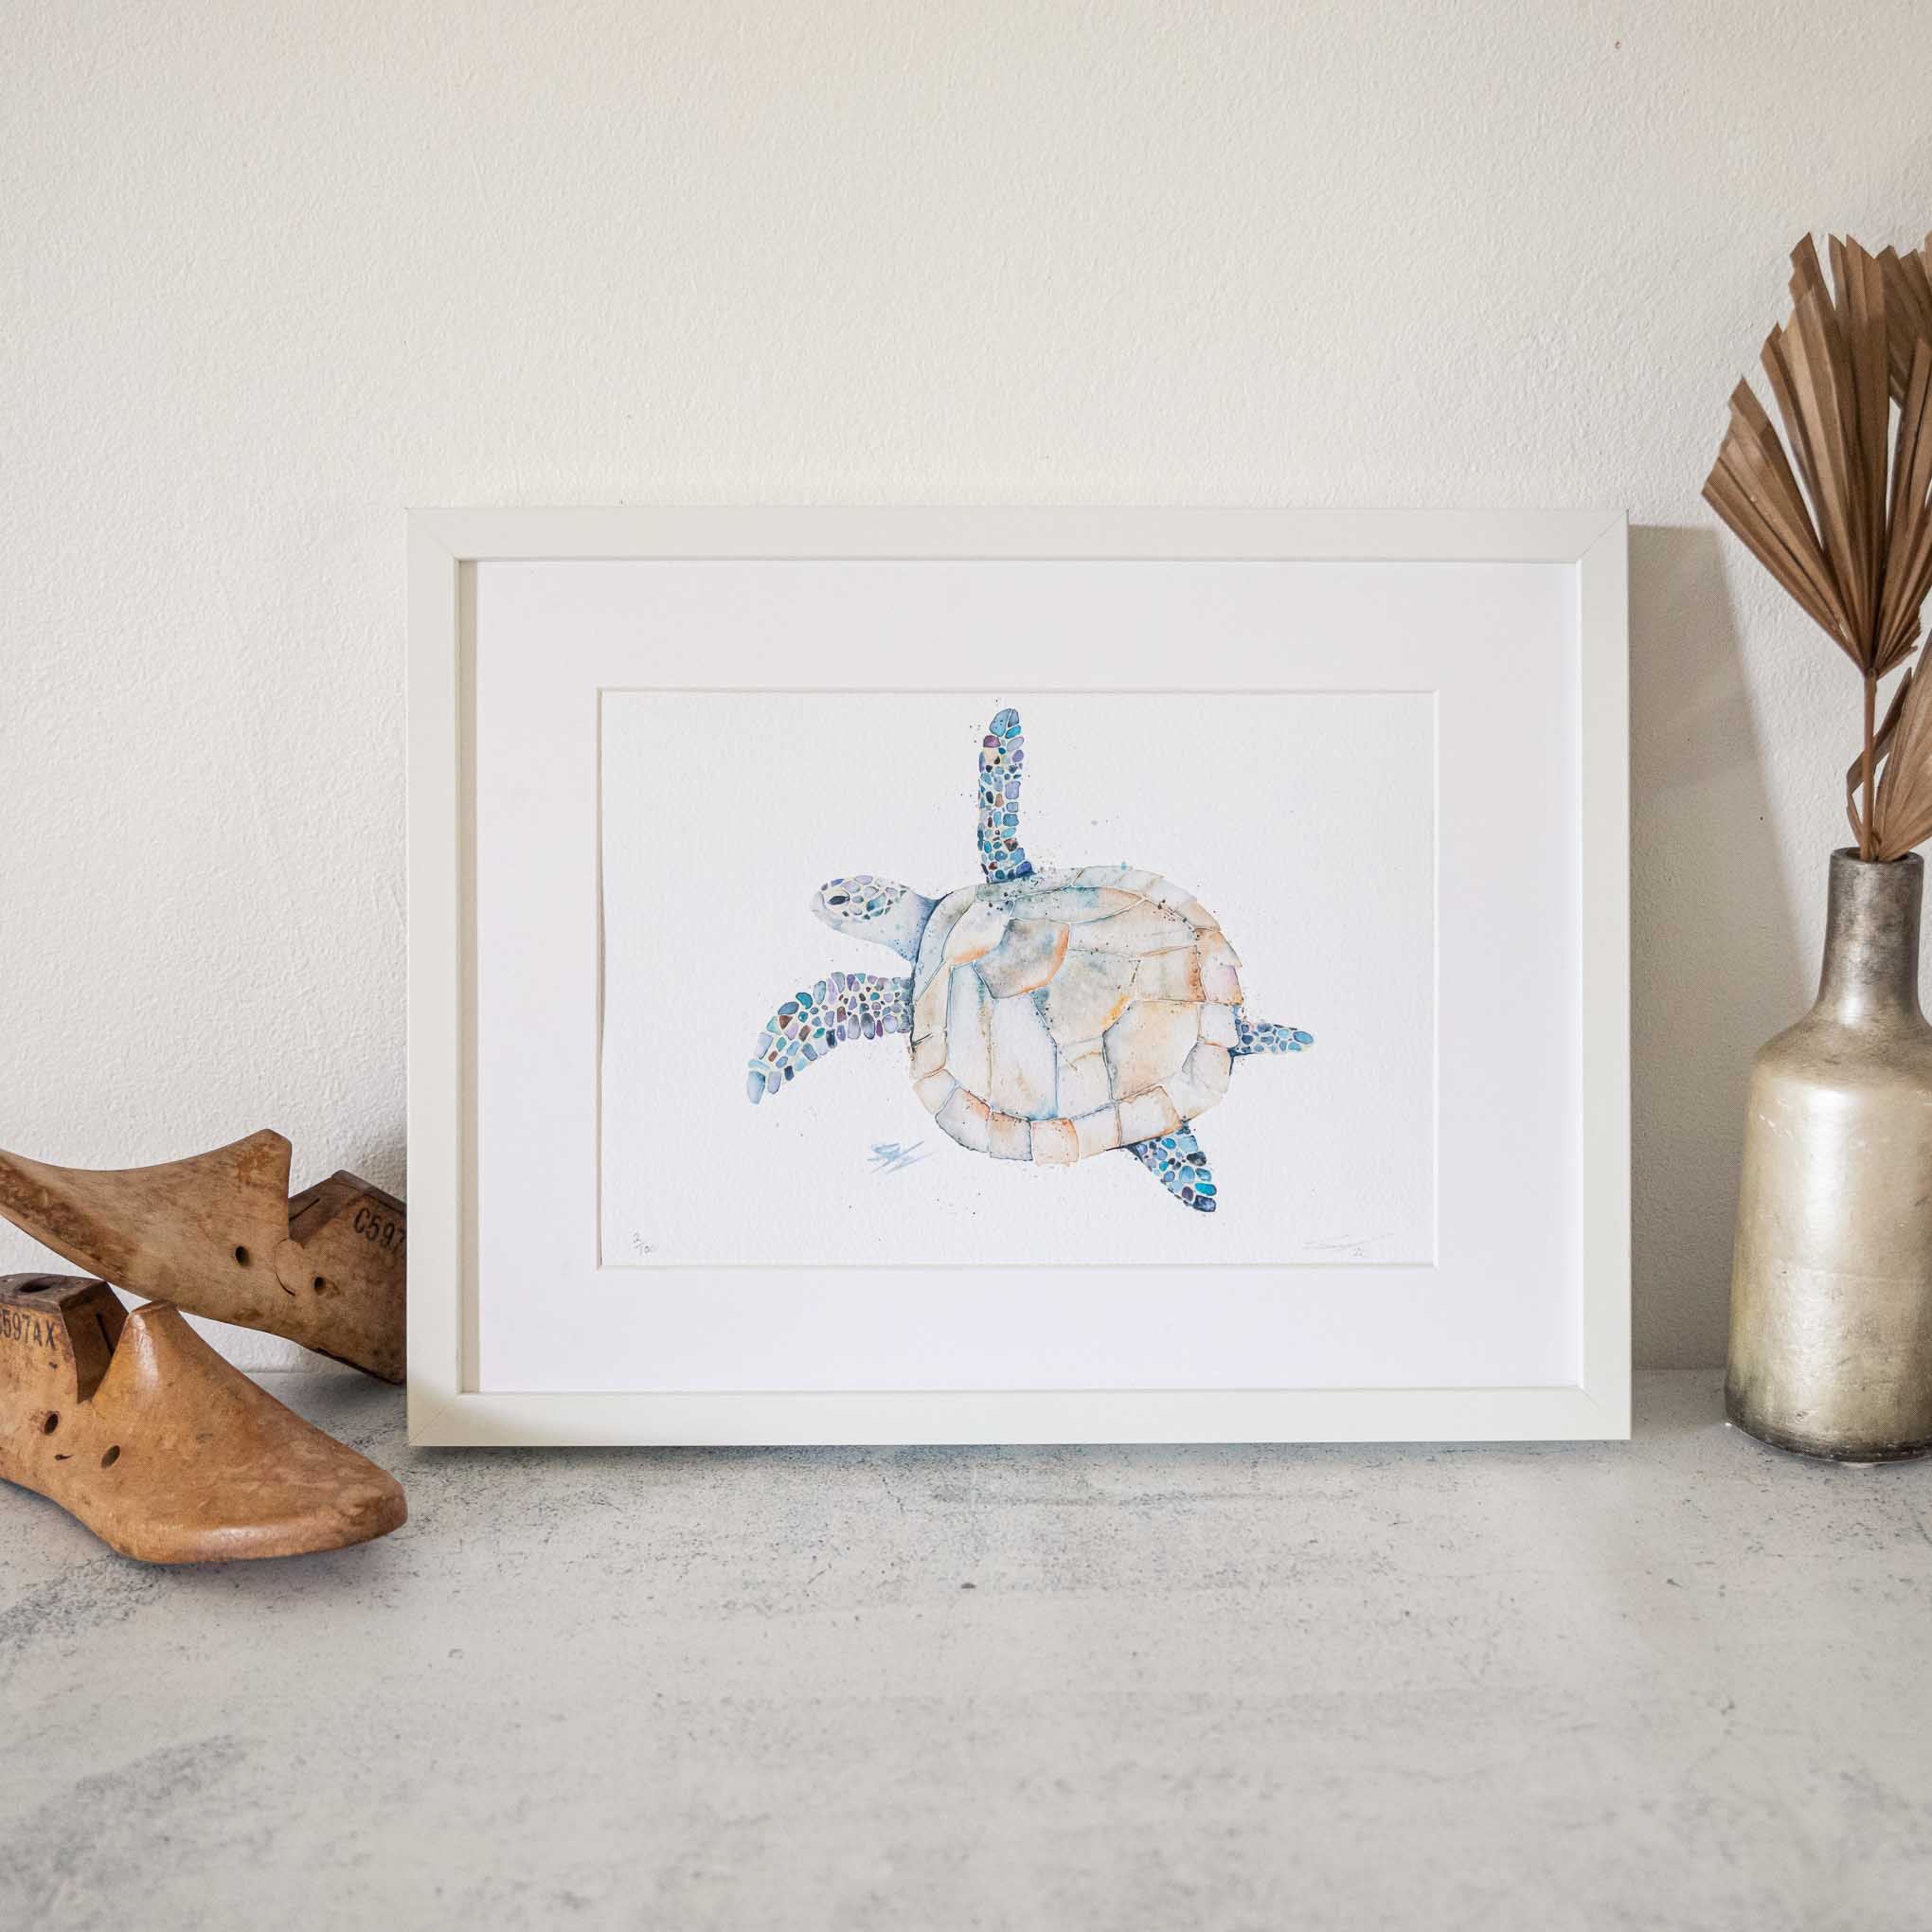 Framed Turtle watercolour animal artwork